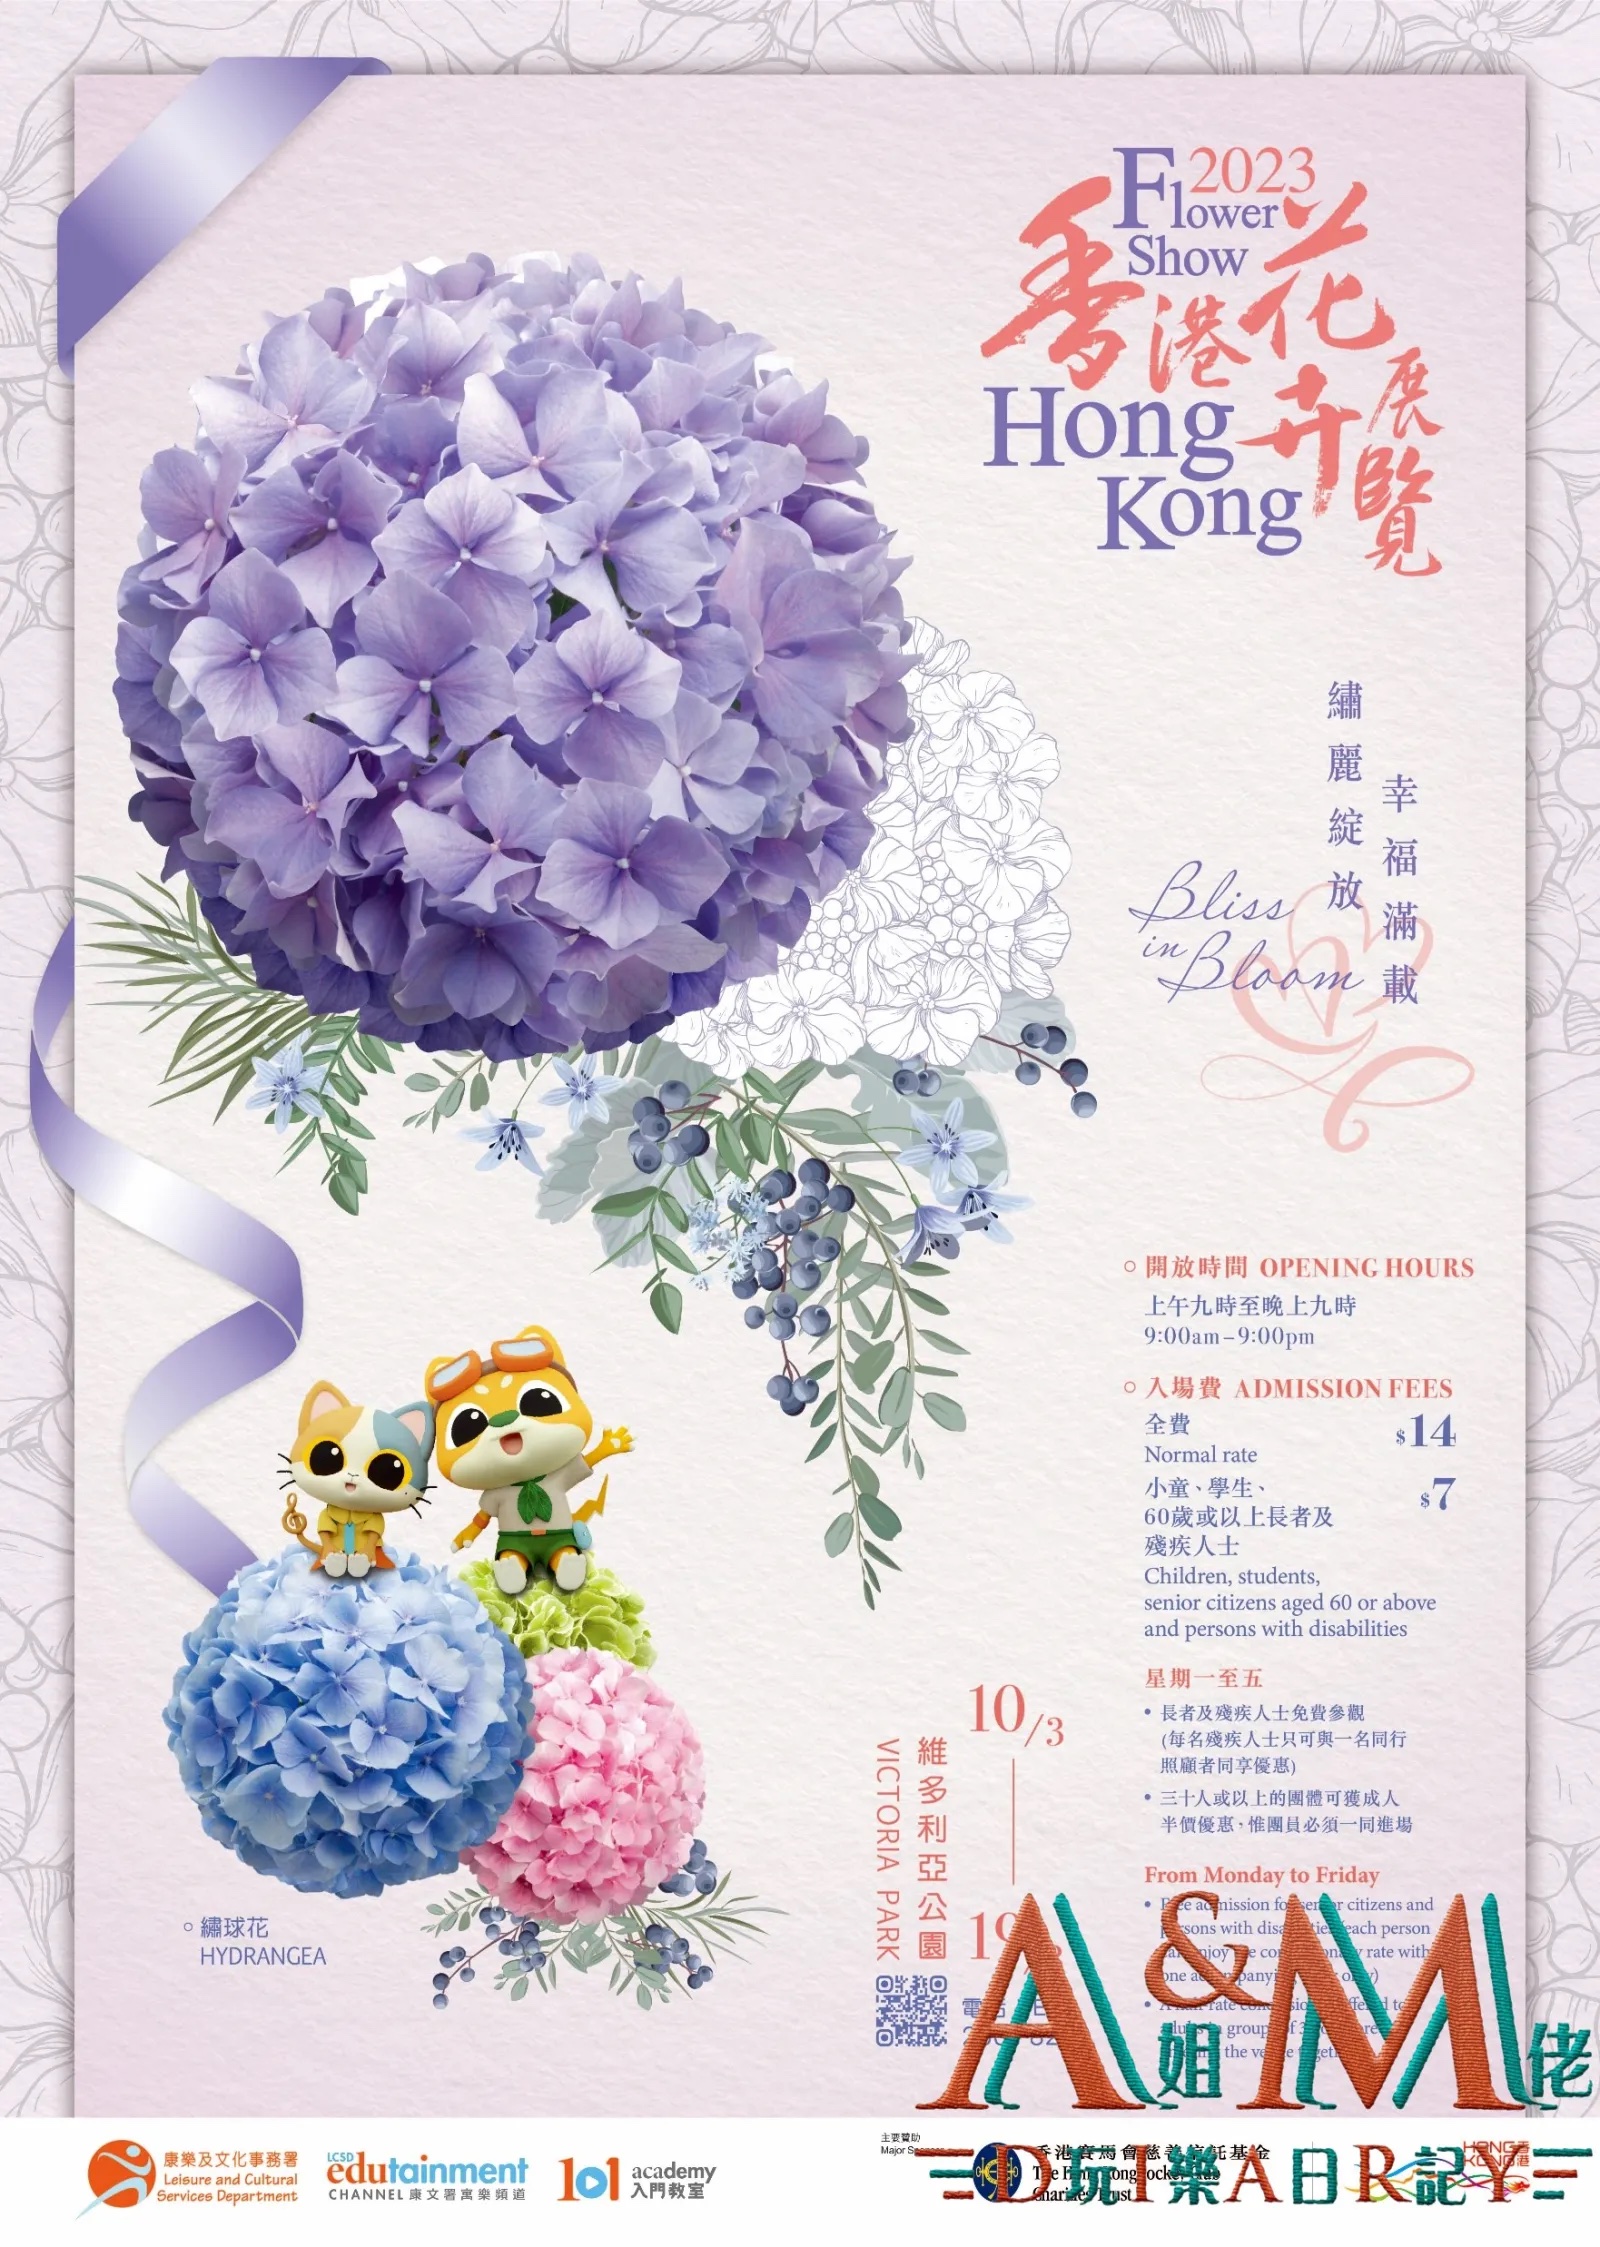 〈好遊〉【花卉展2023】香港花卉展覽3月回歸維園 繡球花主題/展覽地點/展覽日期/開放時間/活動/門票優惠